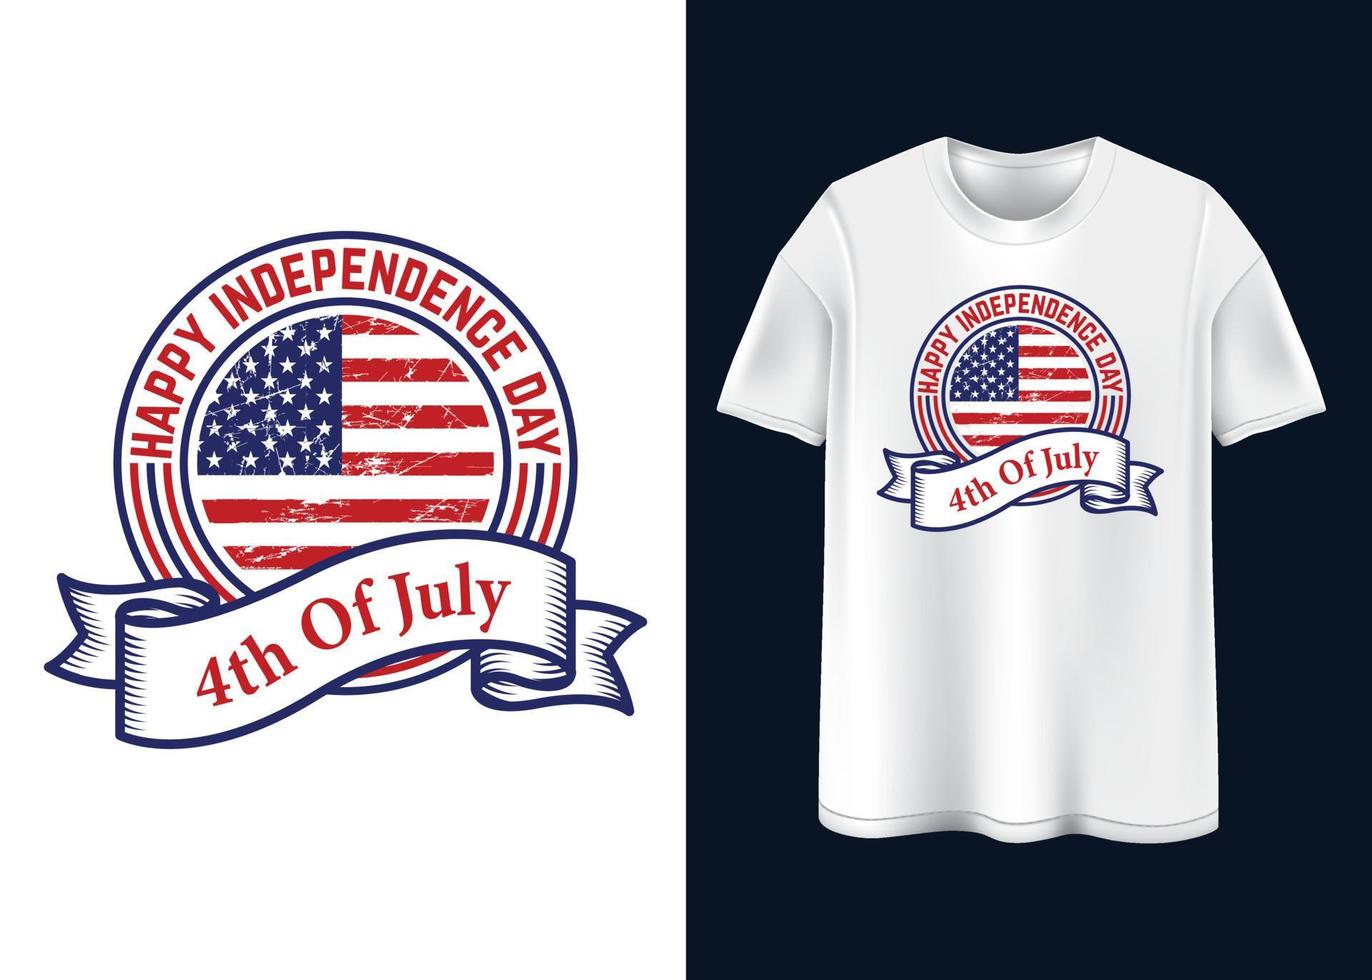 gelukkig onafhankelijkheidsdag t-shirtontwerp vector